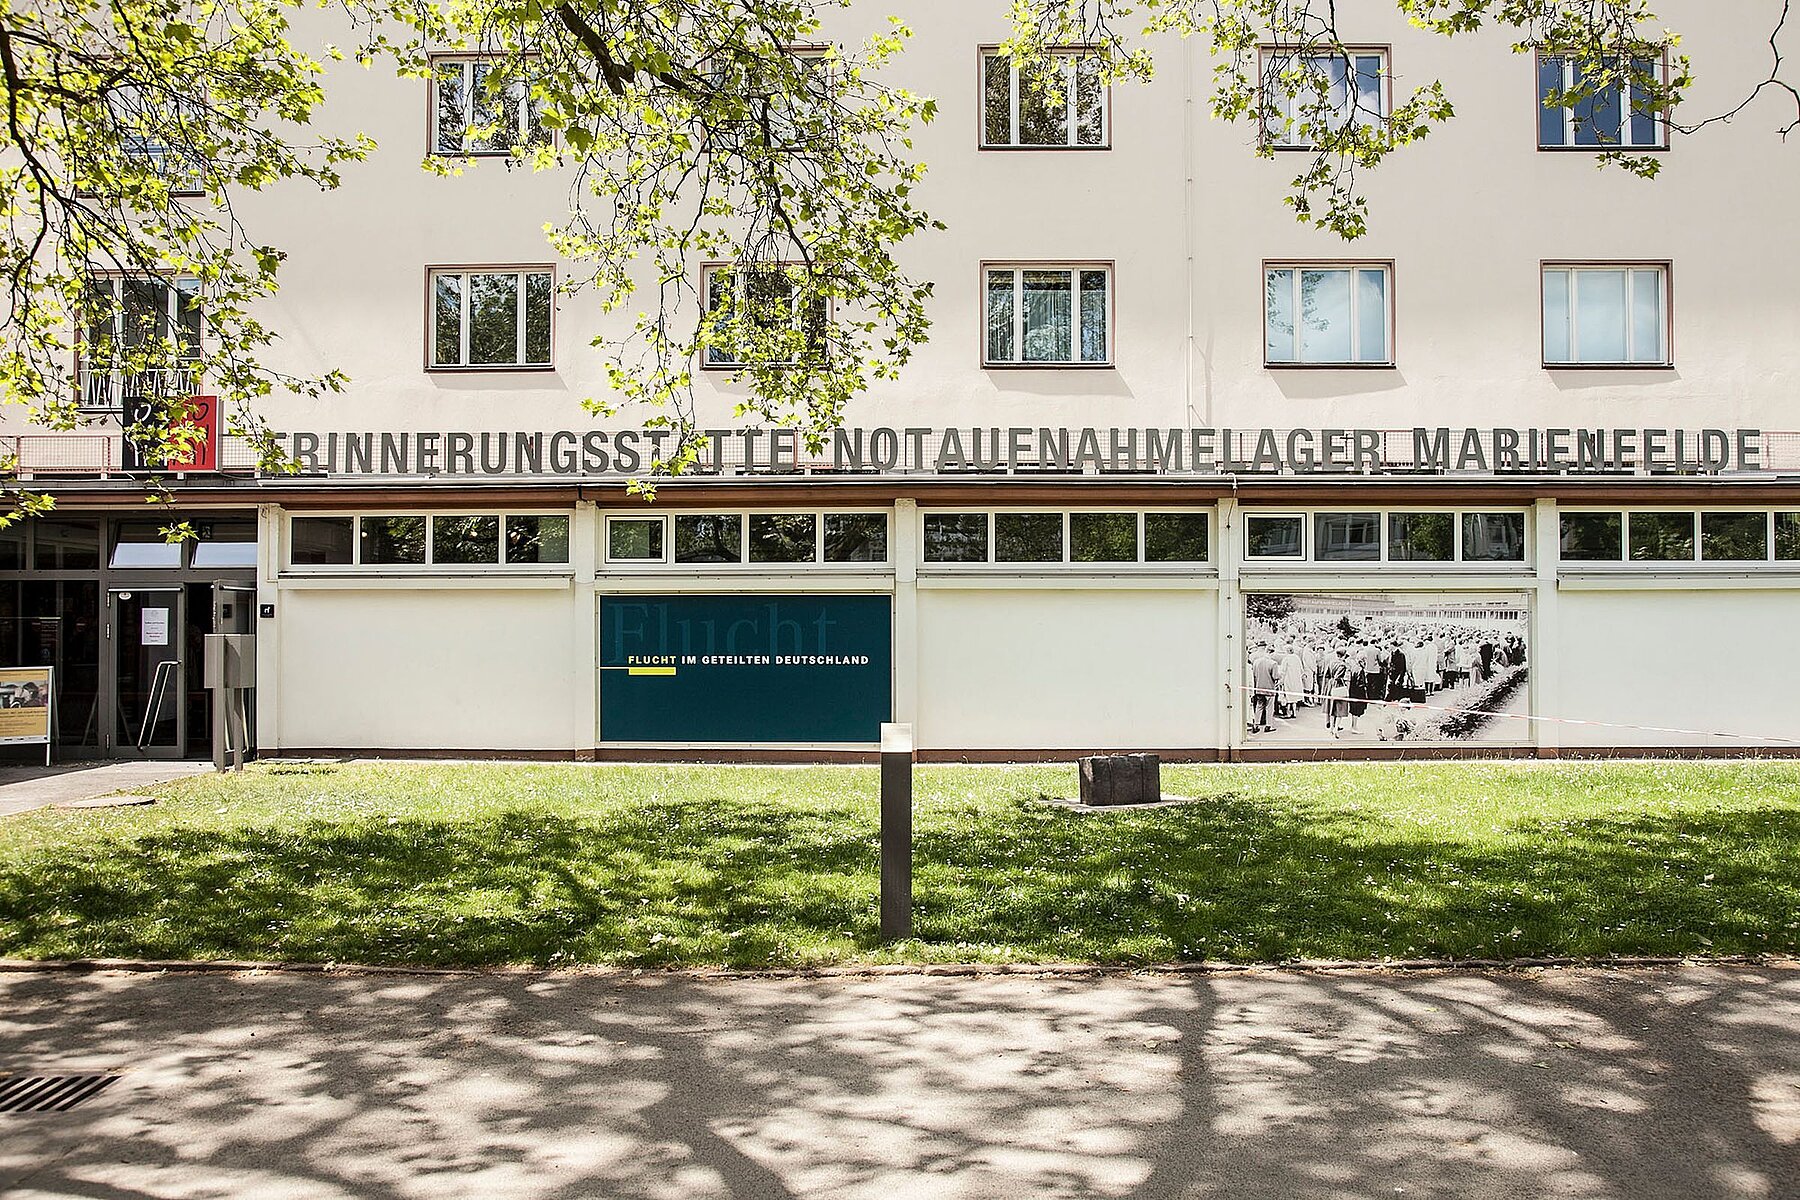 Gebäudefronatlansicht mit Schriftzug Erinnerungsstätte Notaufnahmelager Marienfelde.